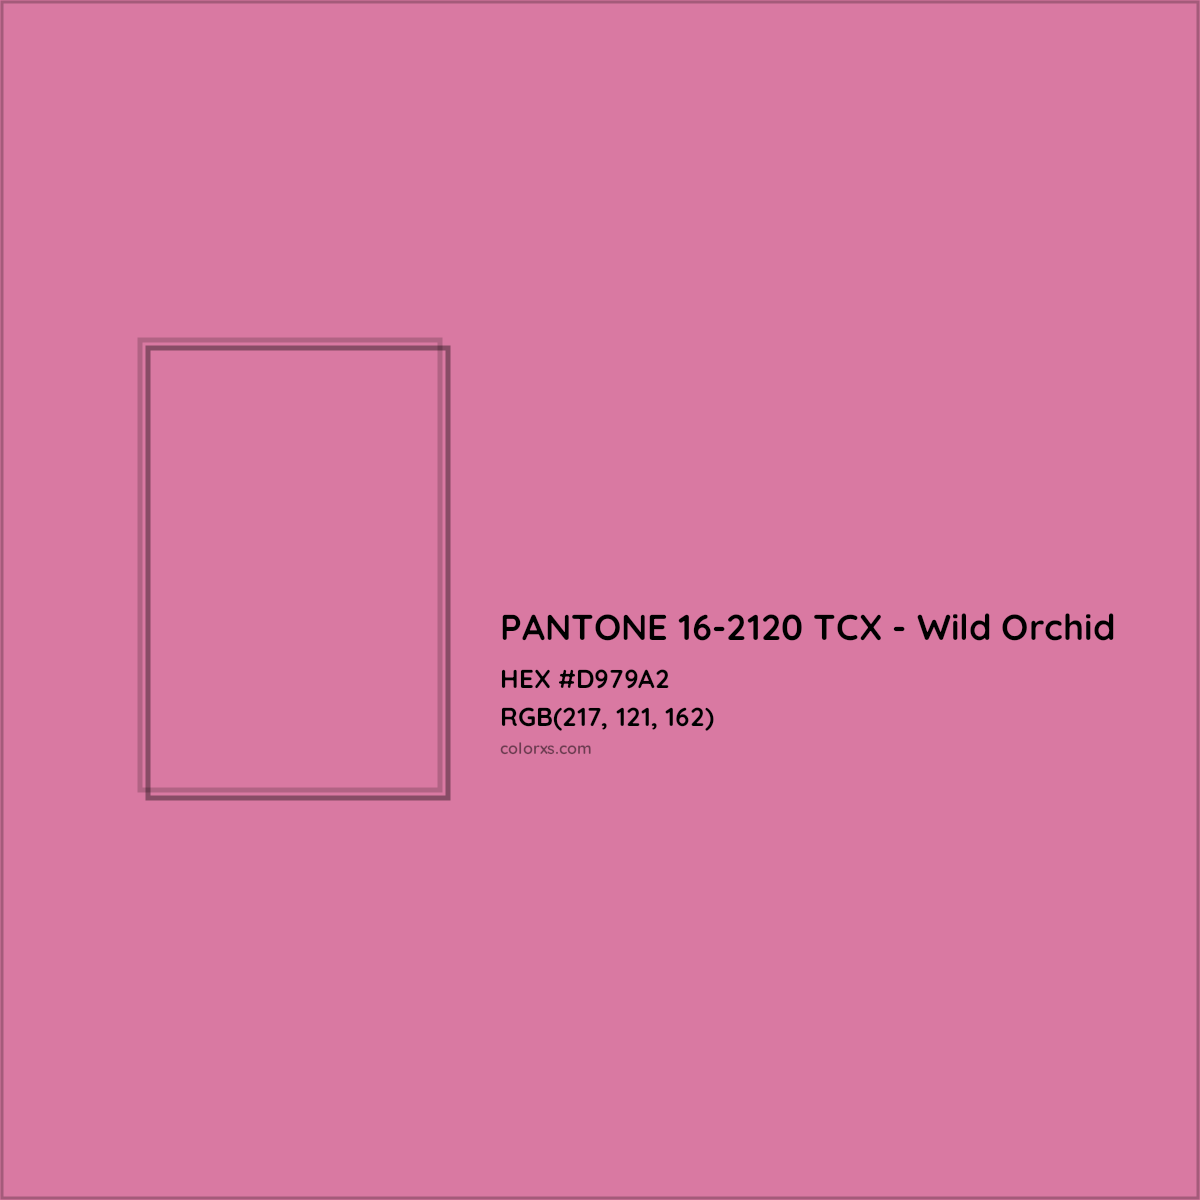 HEX #D979A2 PANTONE 16-2120 TCX - Wild Orchid CMS Pantone TCX - Color Code